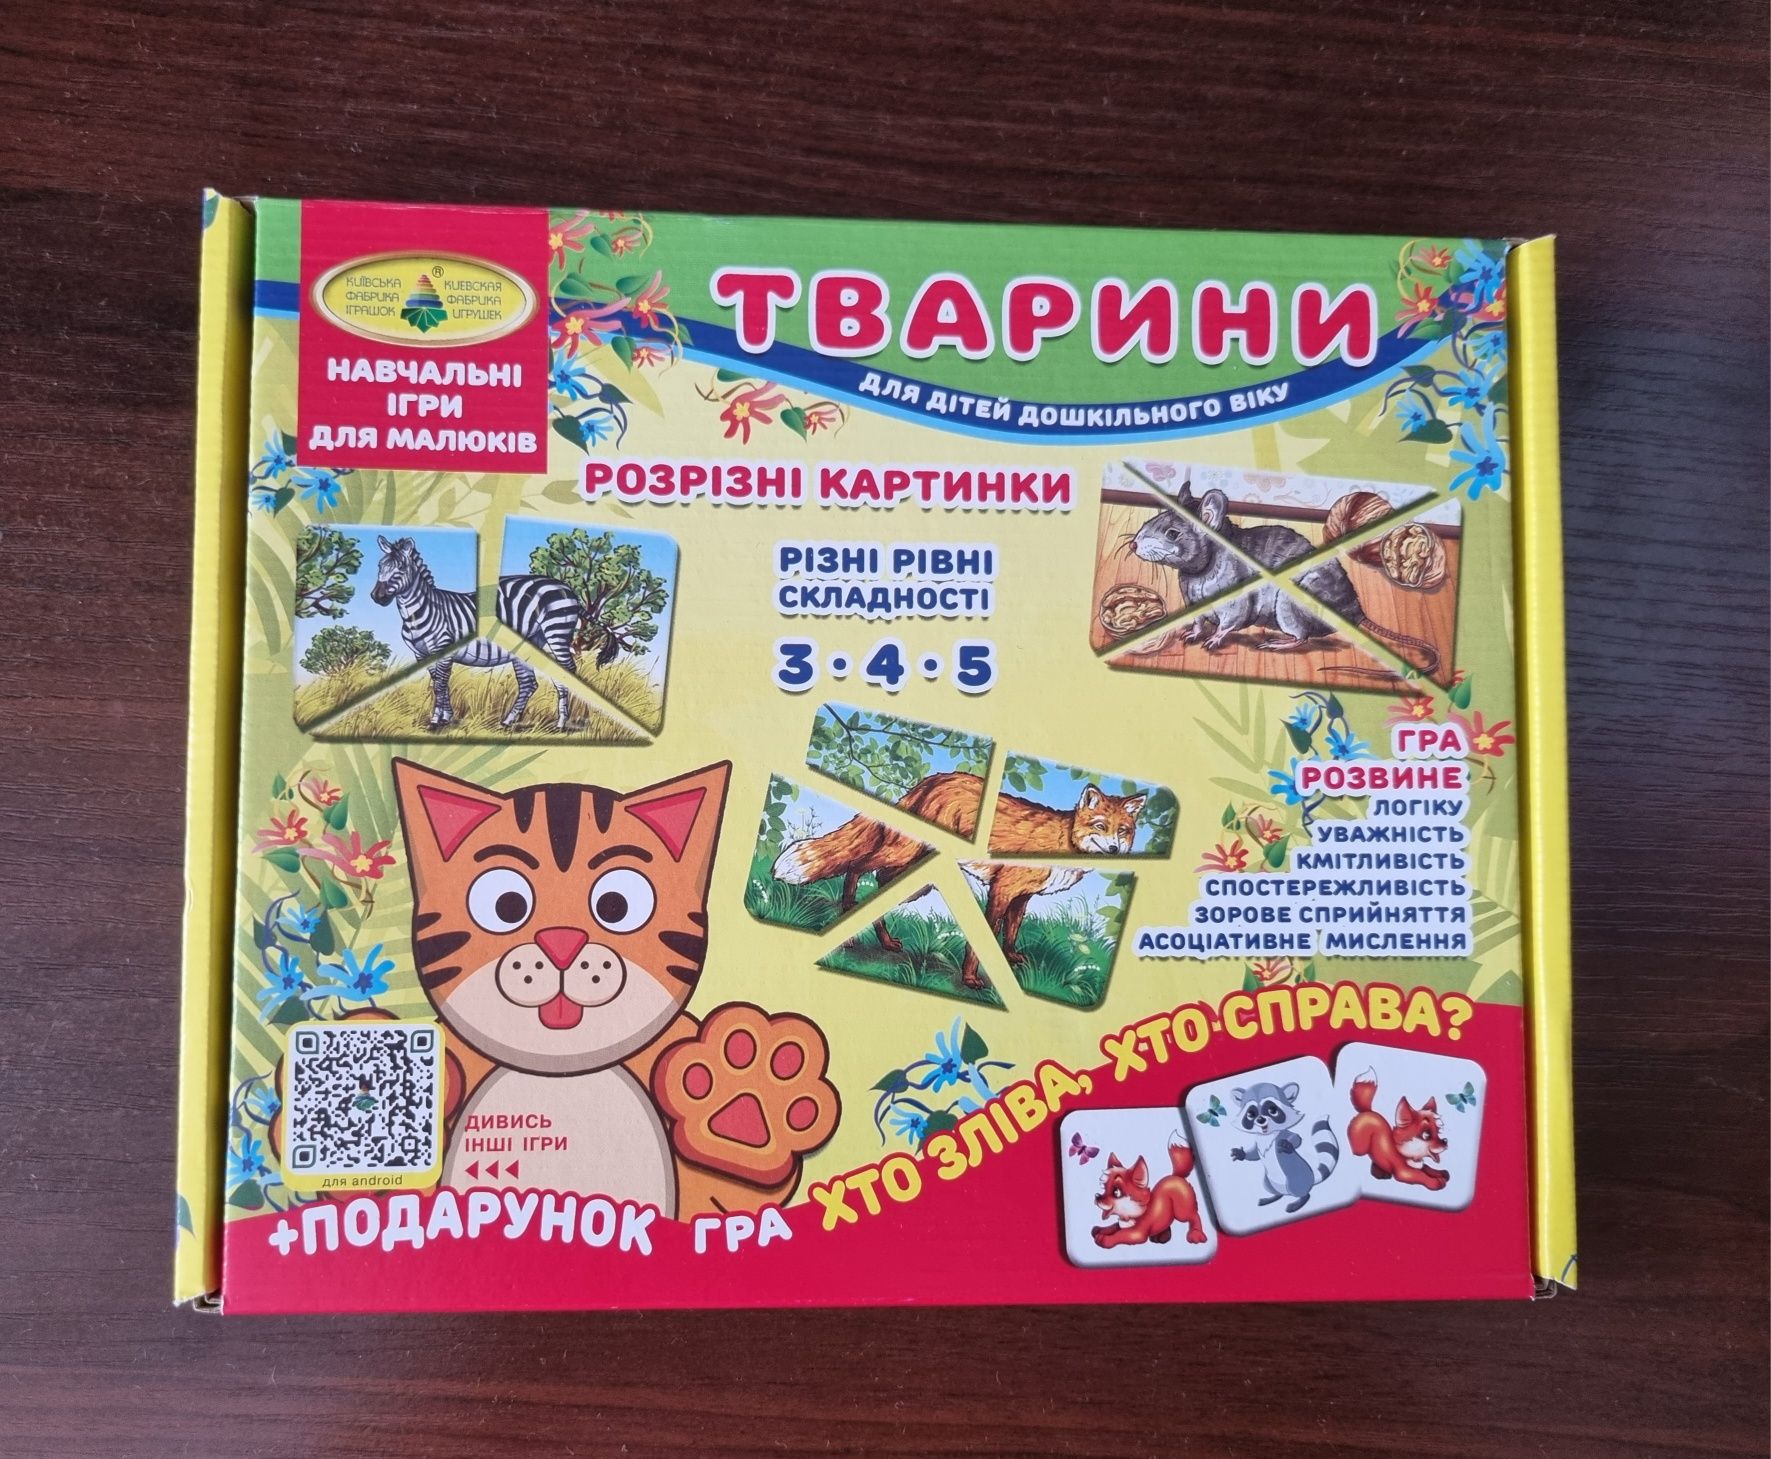 Навчальні ігри для малюків Розрізні картинки Тварини